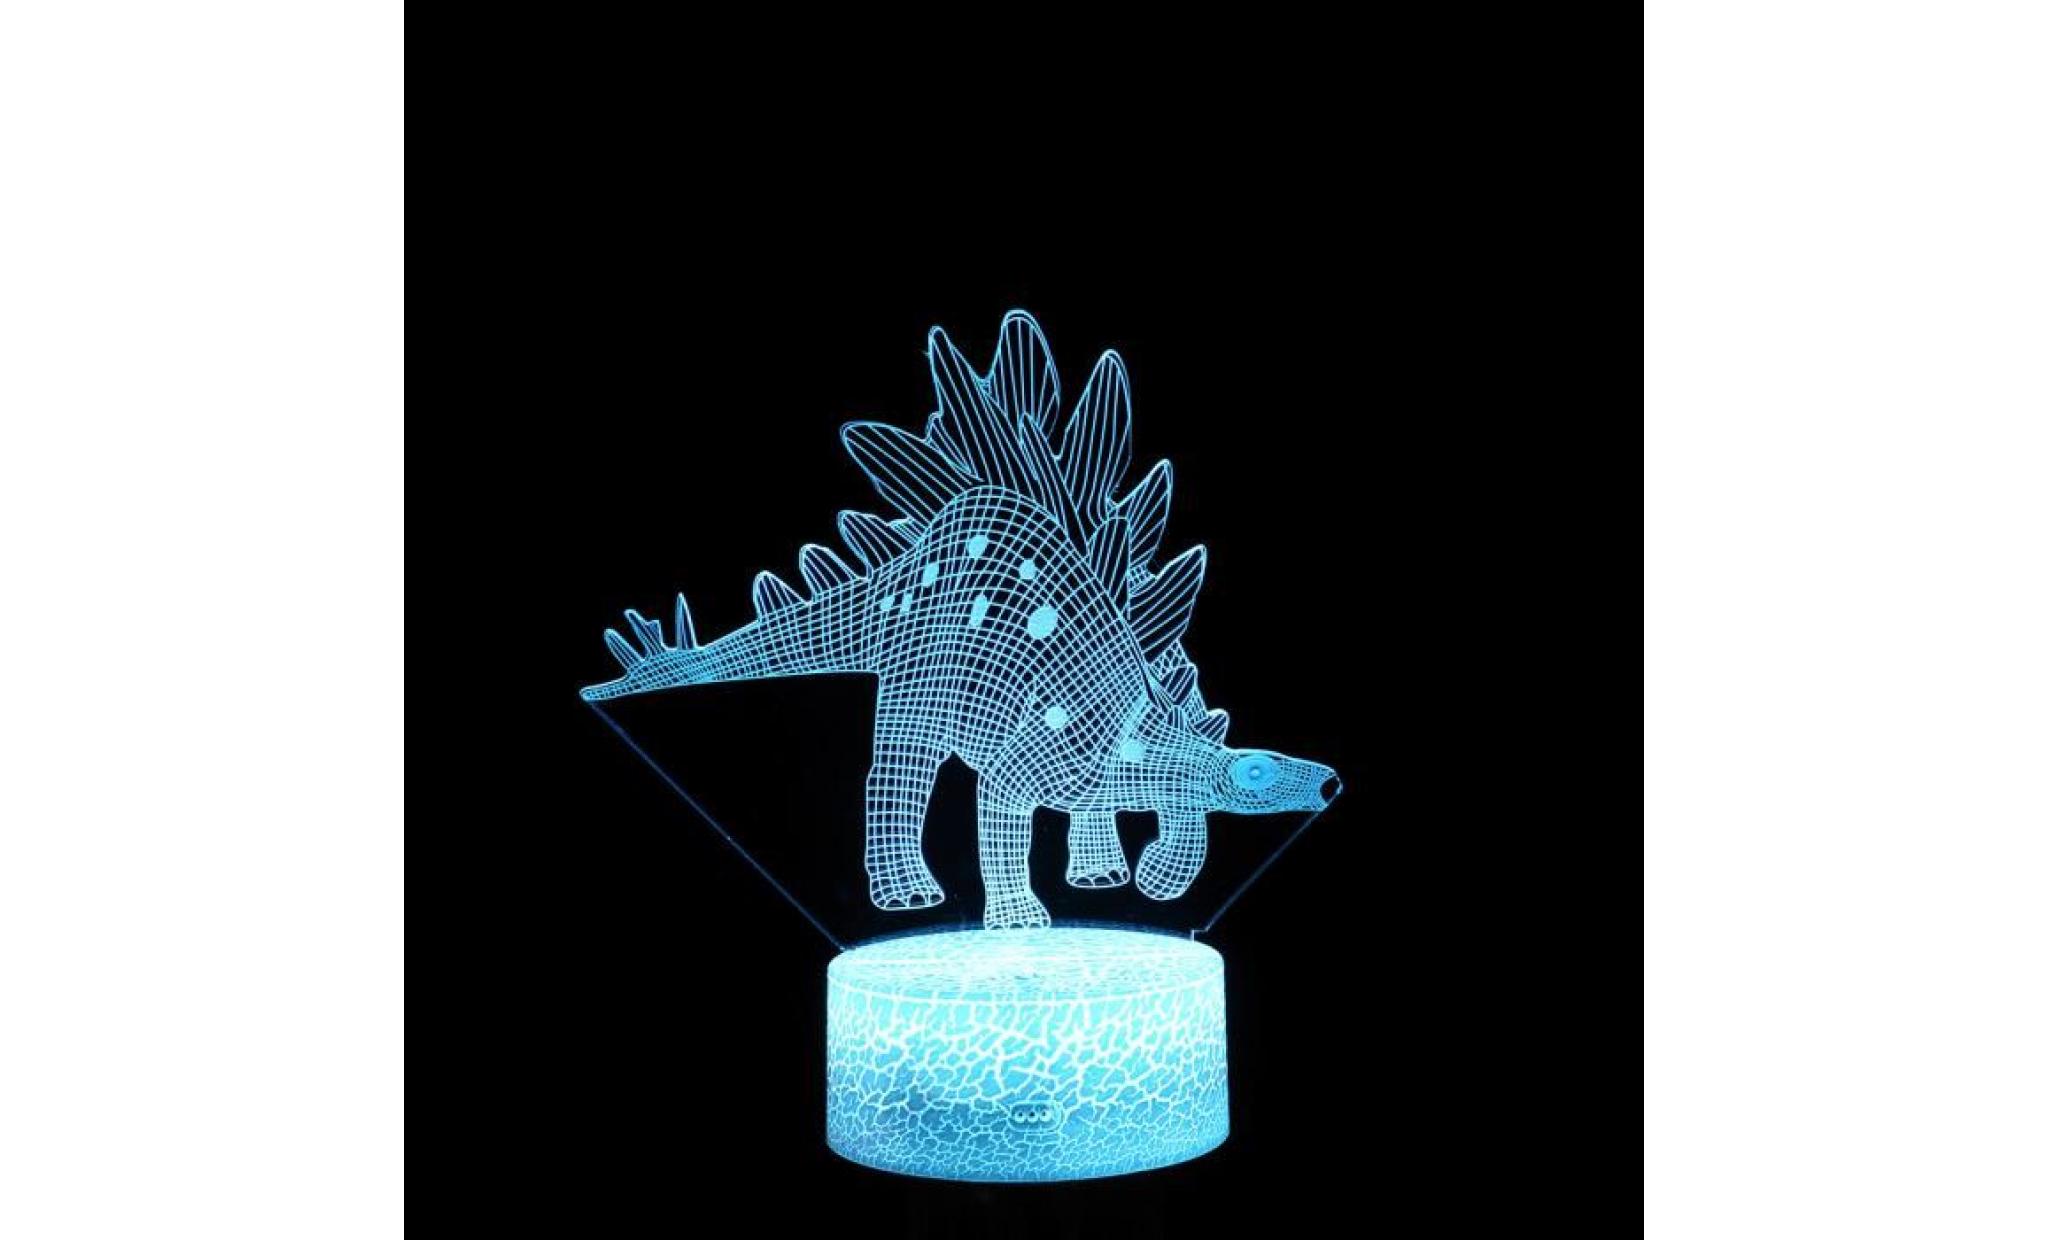 lampe dinosaur enfants night 3d 7 led couleurs changeantes table bureau décoration ylc581